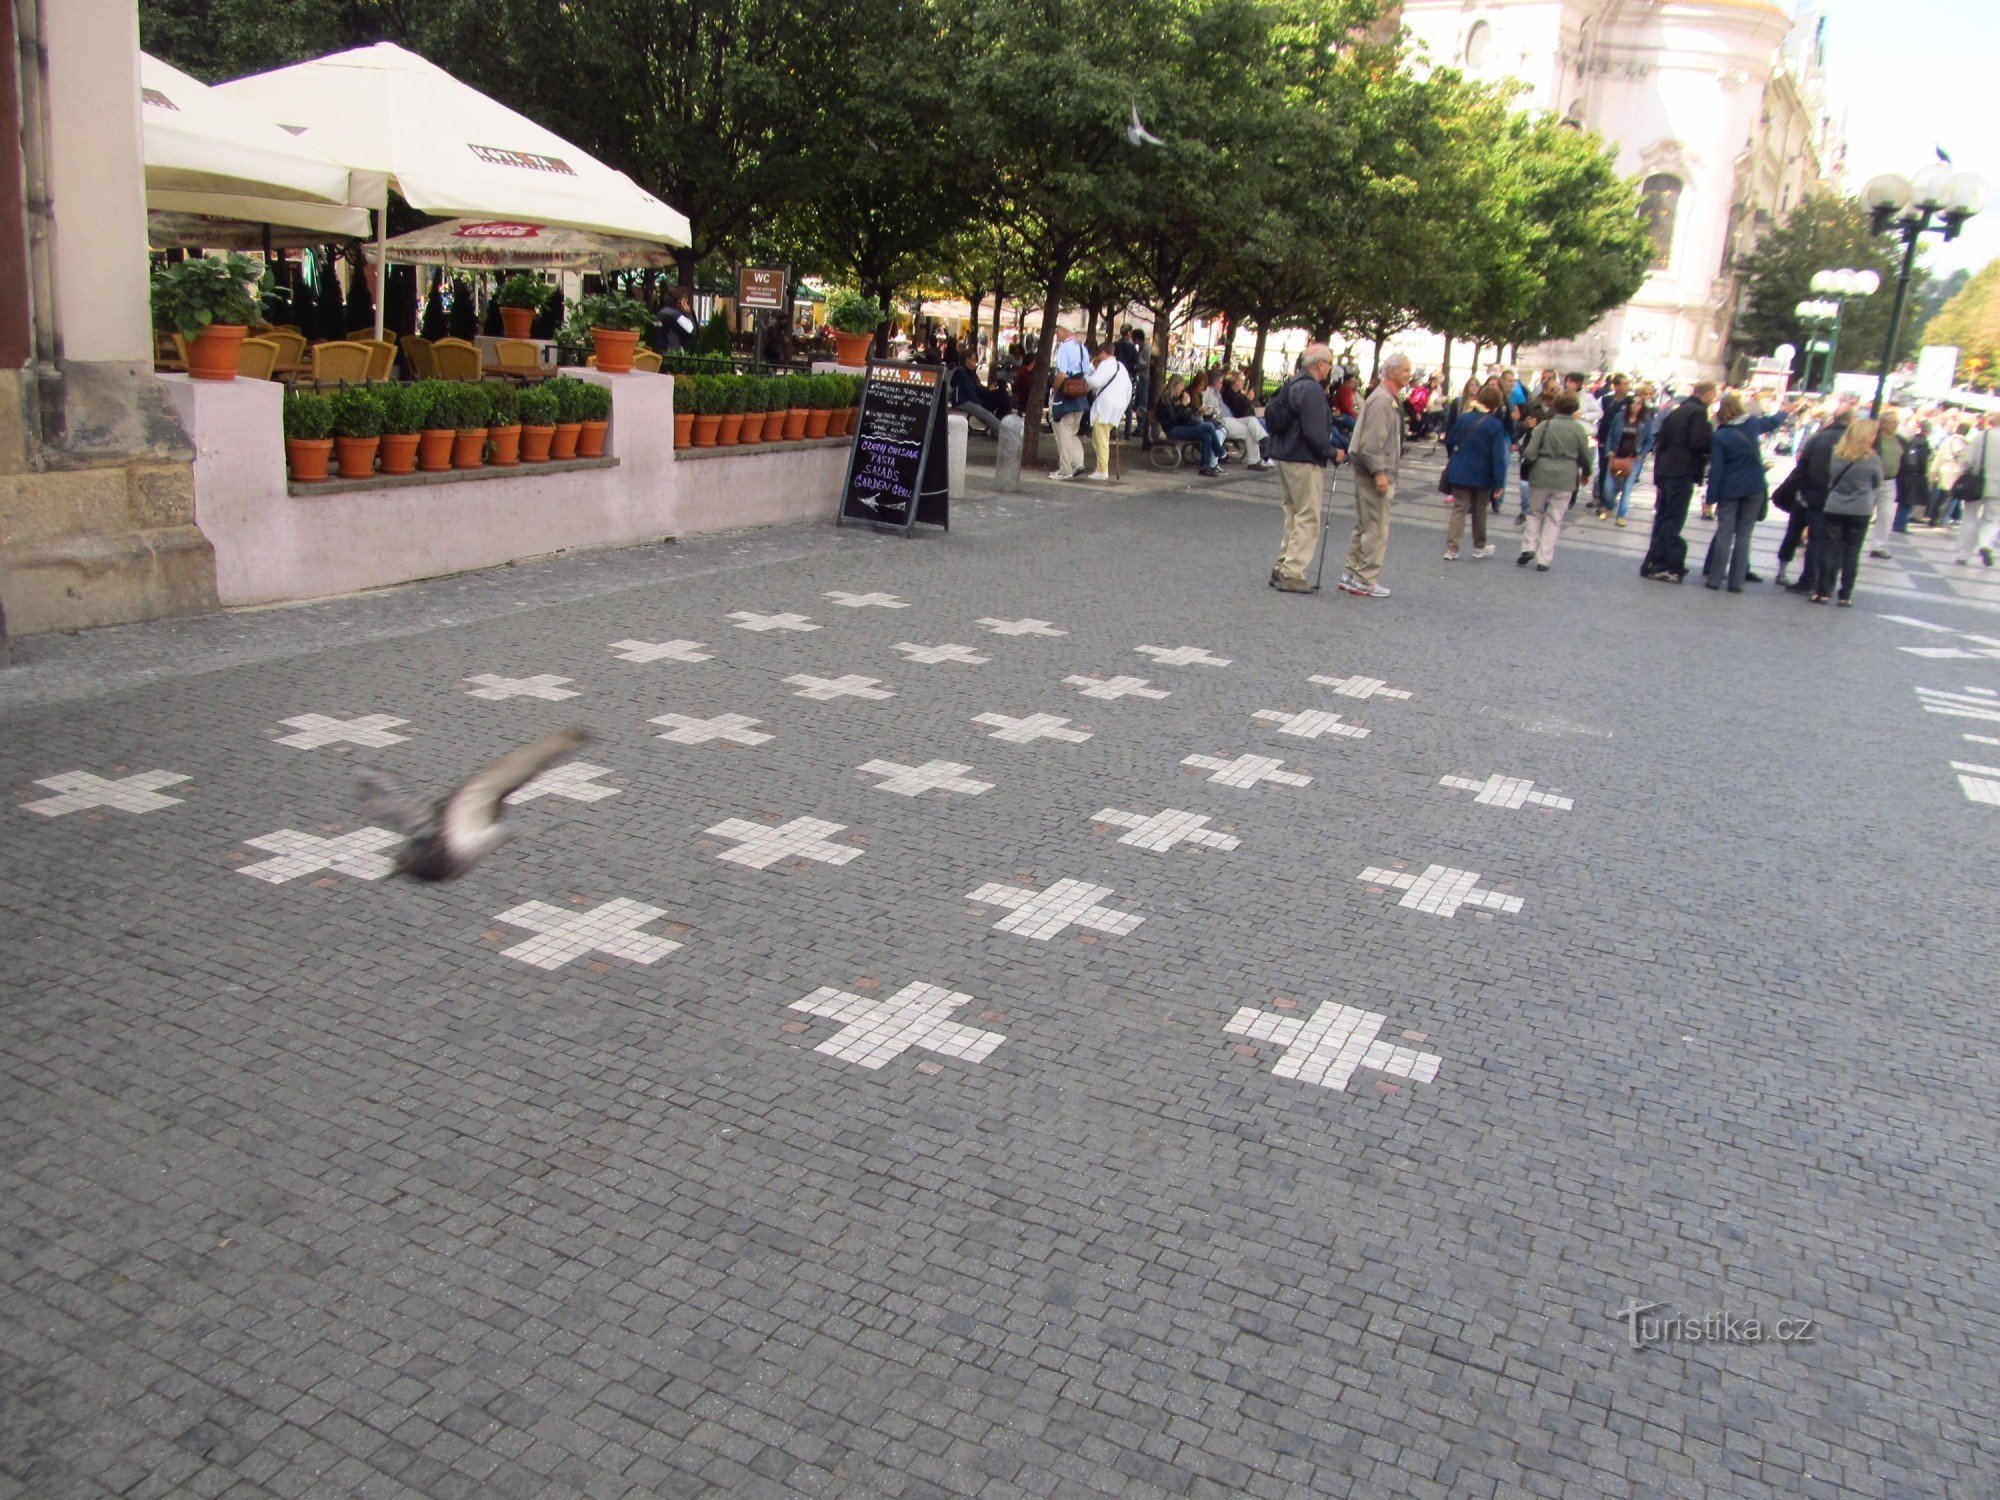 27 cruzes na calçada do Old Town Hall em Praga como lembrança da execução de 27 tchecos